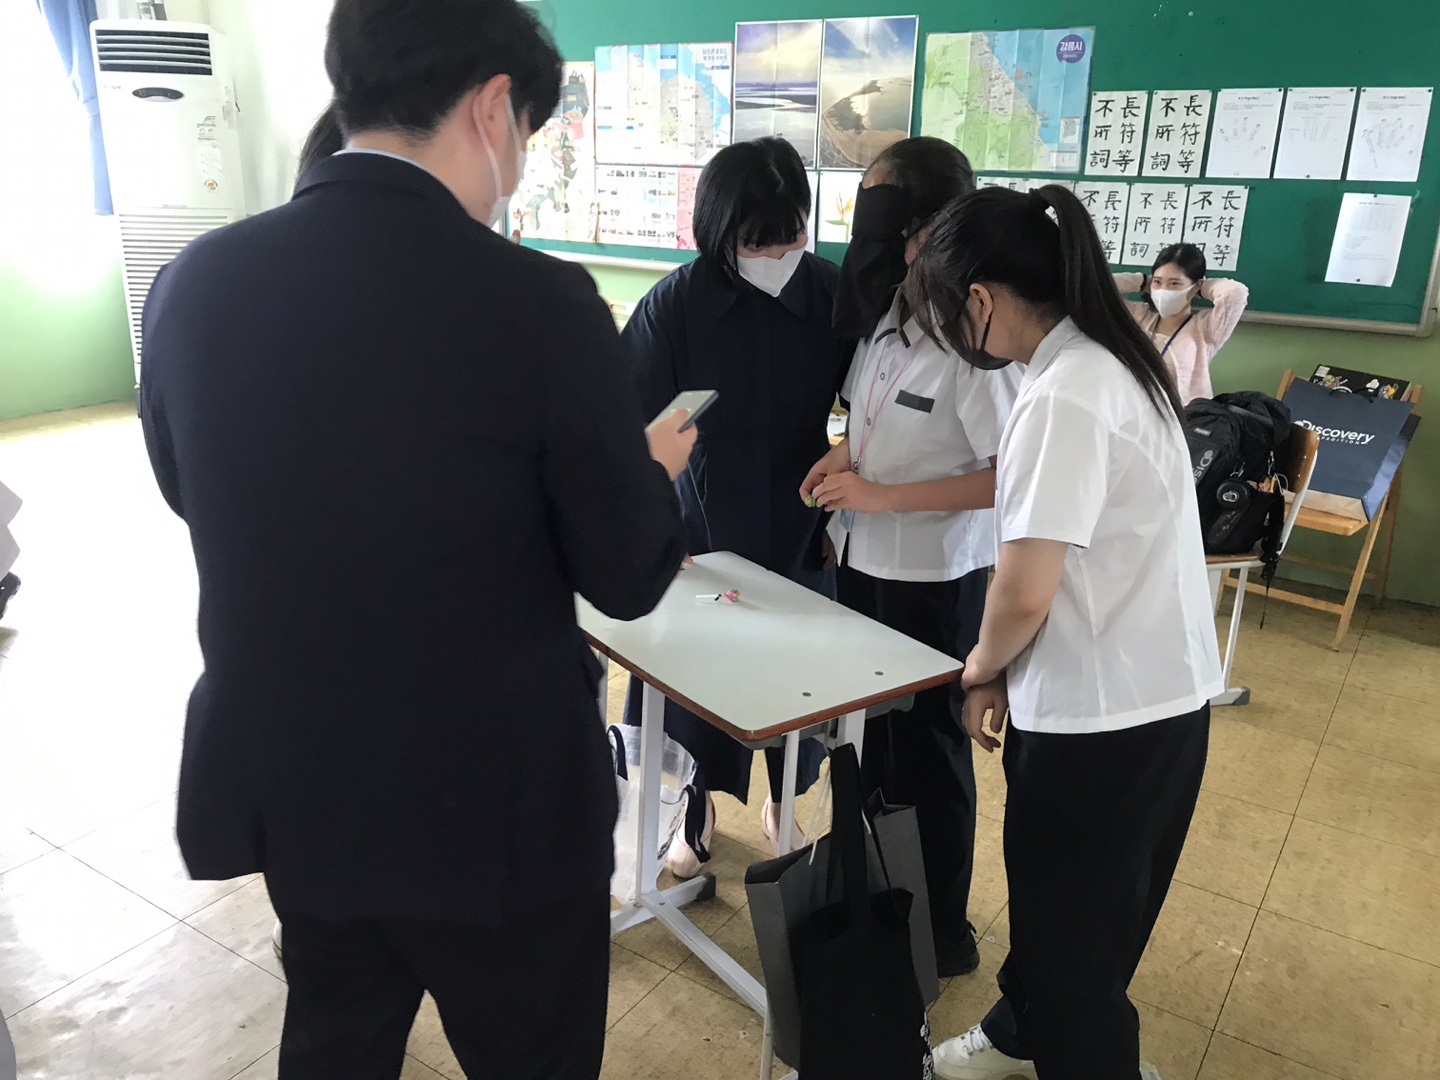 韓國大學實習教師讓同學們分組進行教學活動